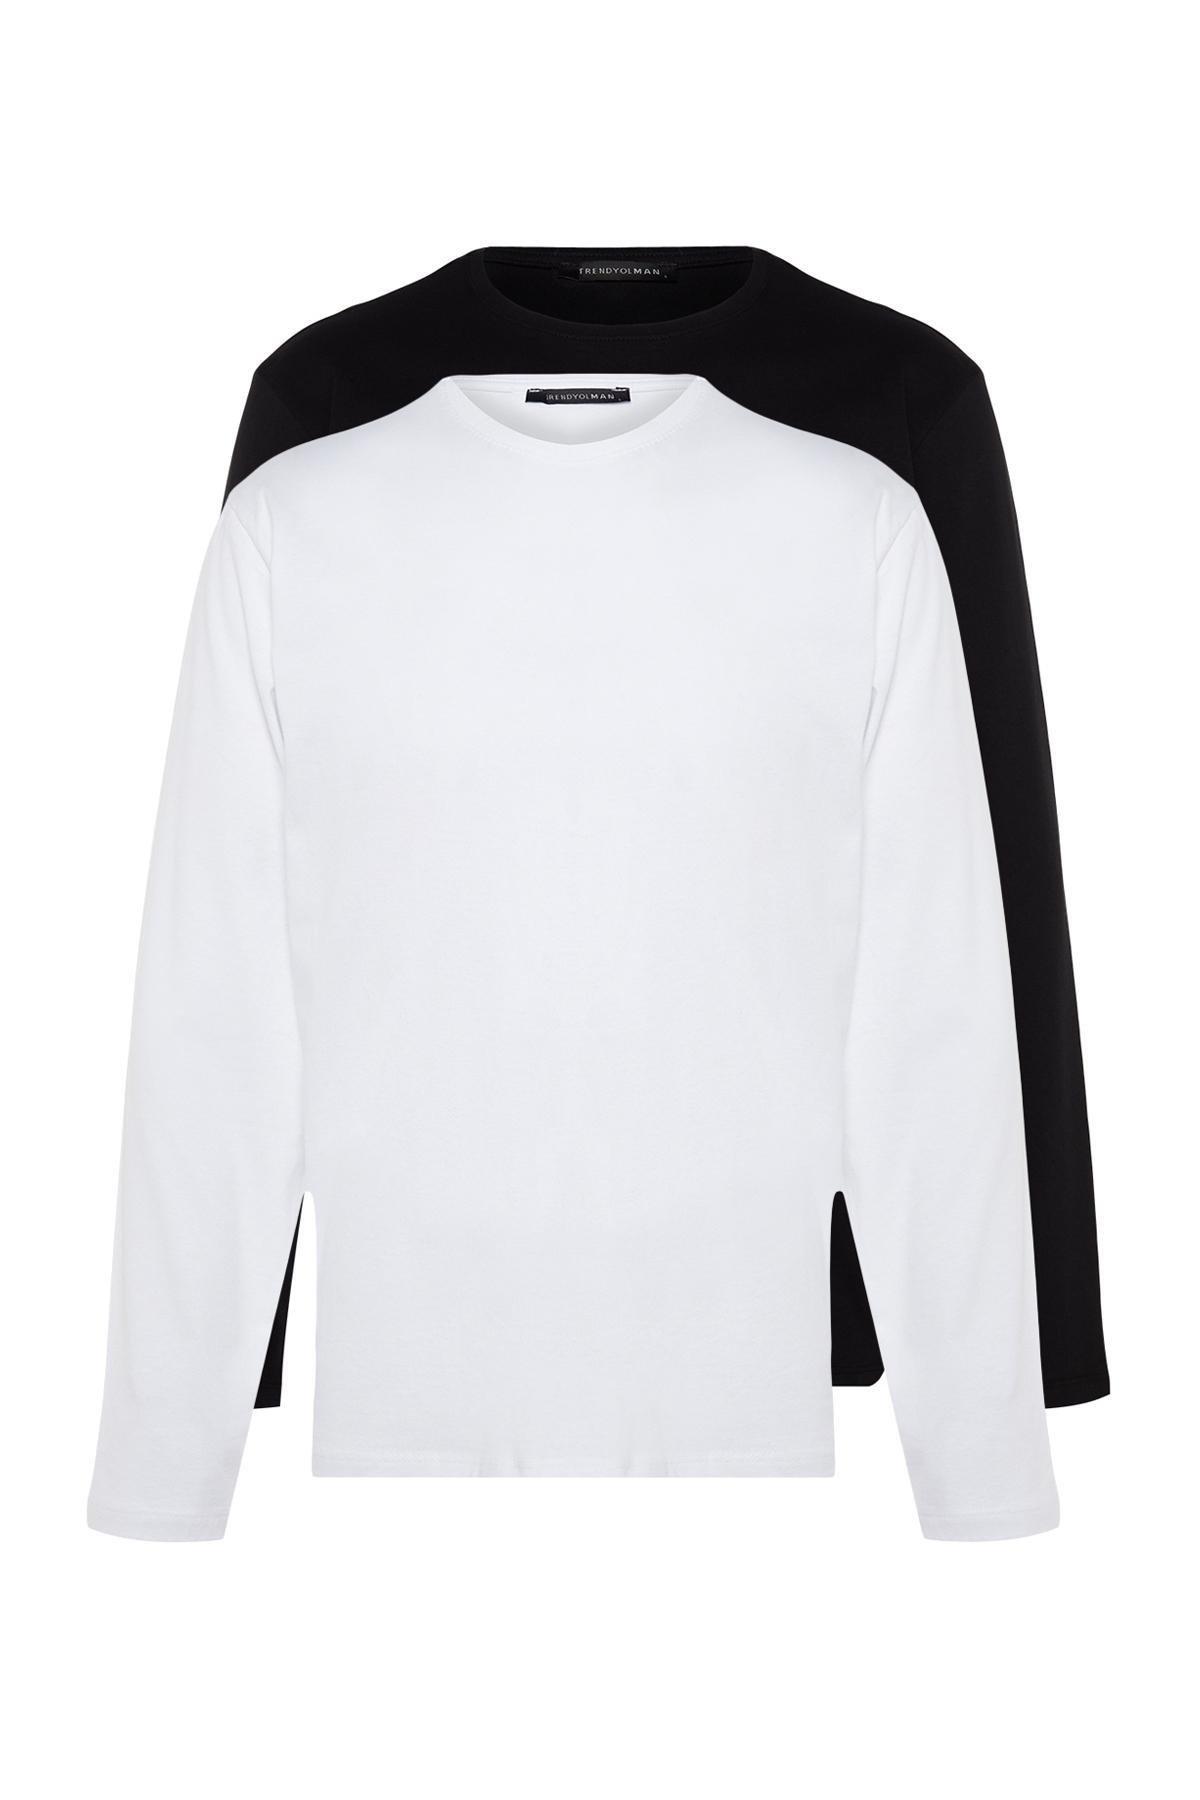 Trendyol - Multicolour Plus Size Cotton T-Shirt, Set Of 2